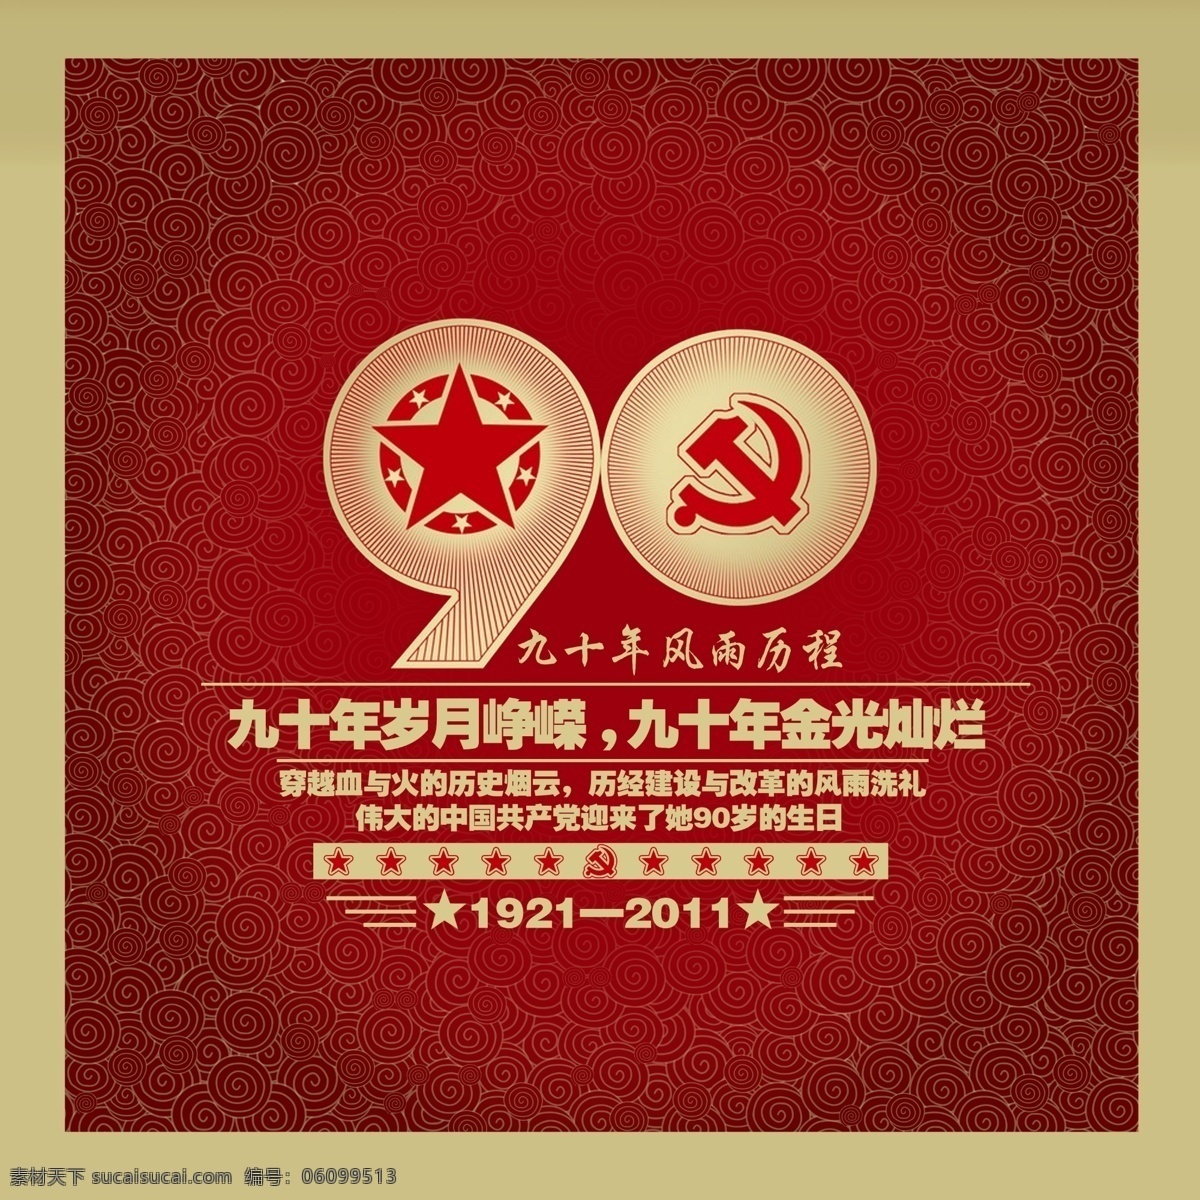 建党90周年 90周年 建党 中国 政府 周年庆 共产党 比赛作品 参赛作品 广告设计模板 源文件